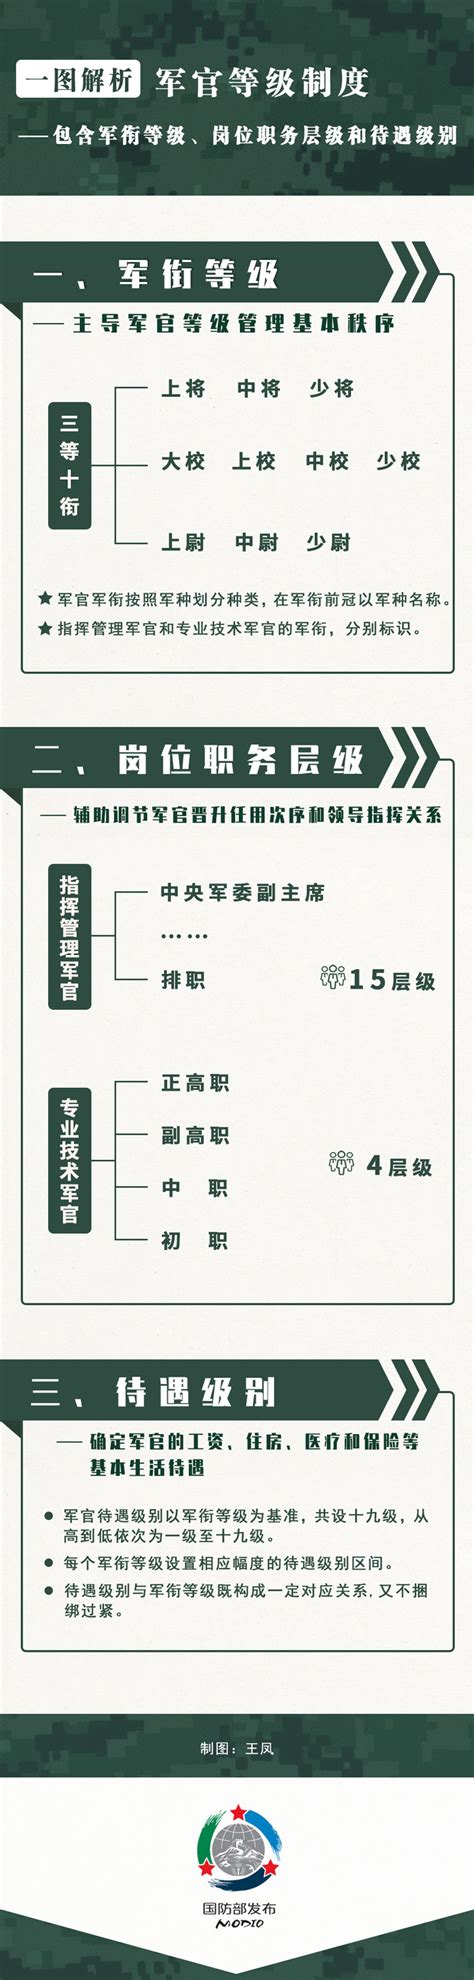 中国人民解放军现役军官服役条例图册_360百科